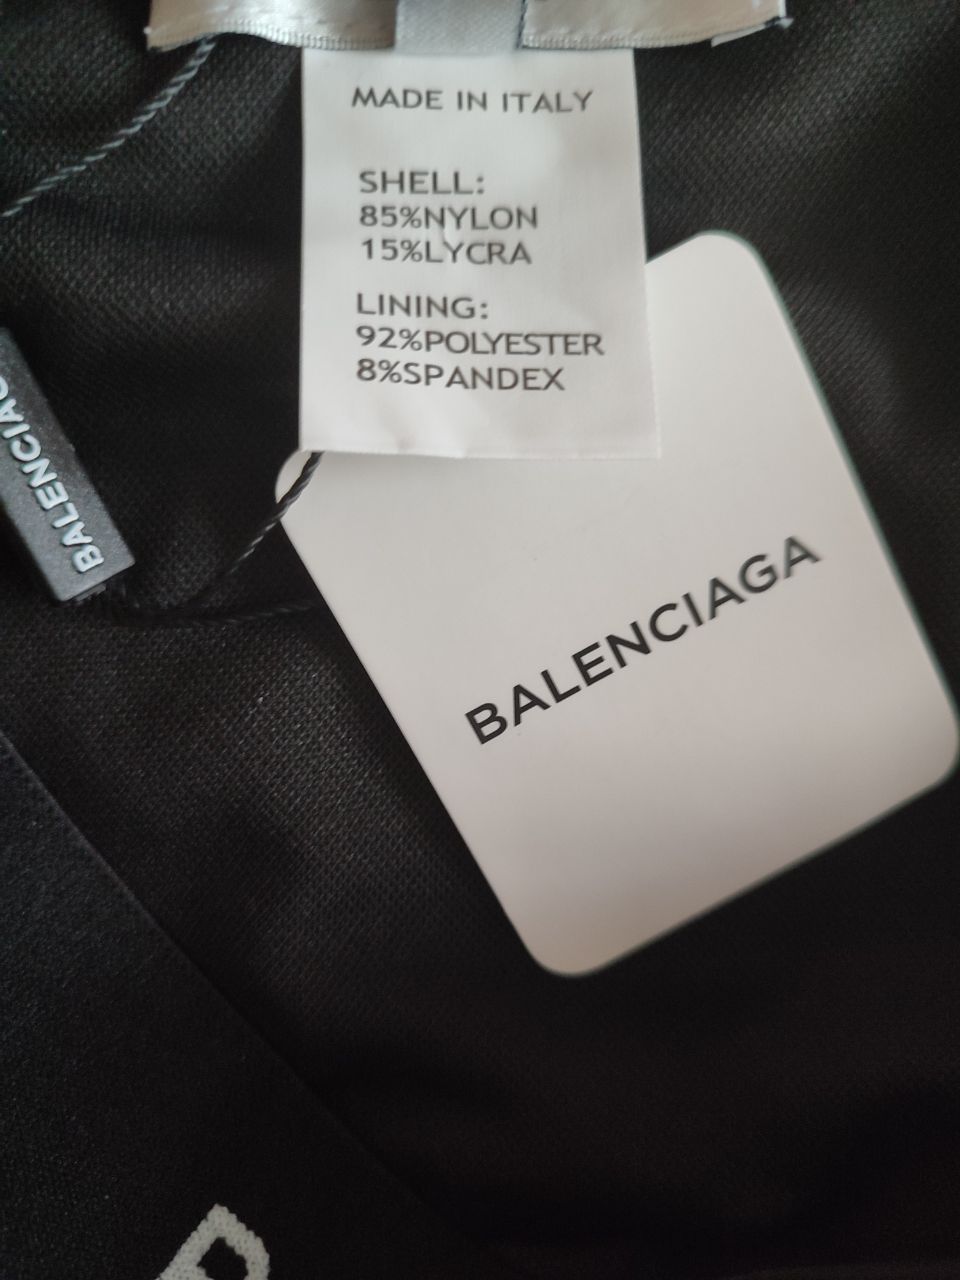 Женский купальник Balenciaga, комплект белья Balenciaga, Баленсиага